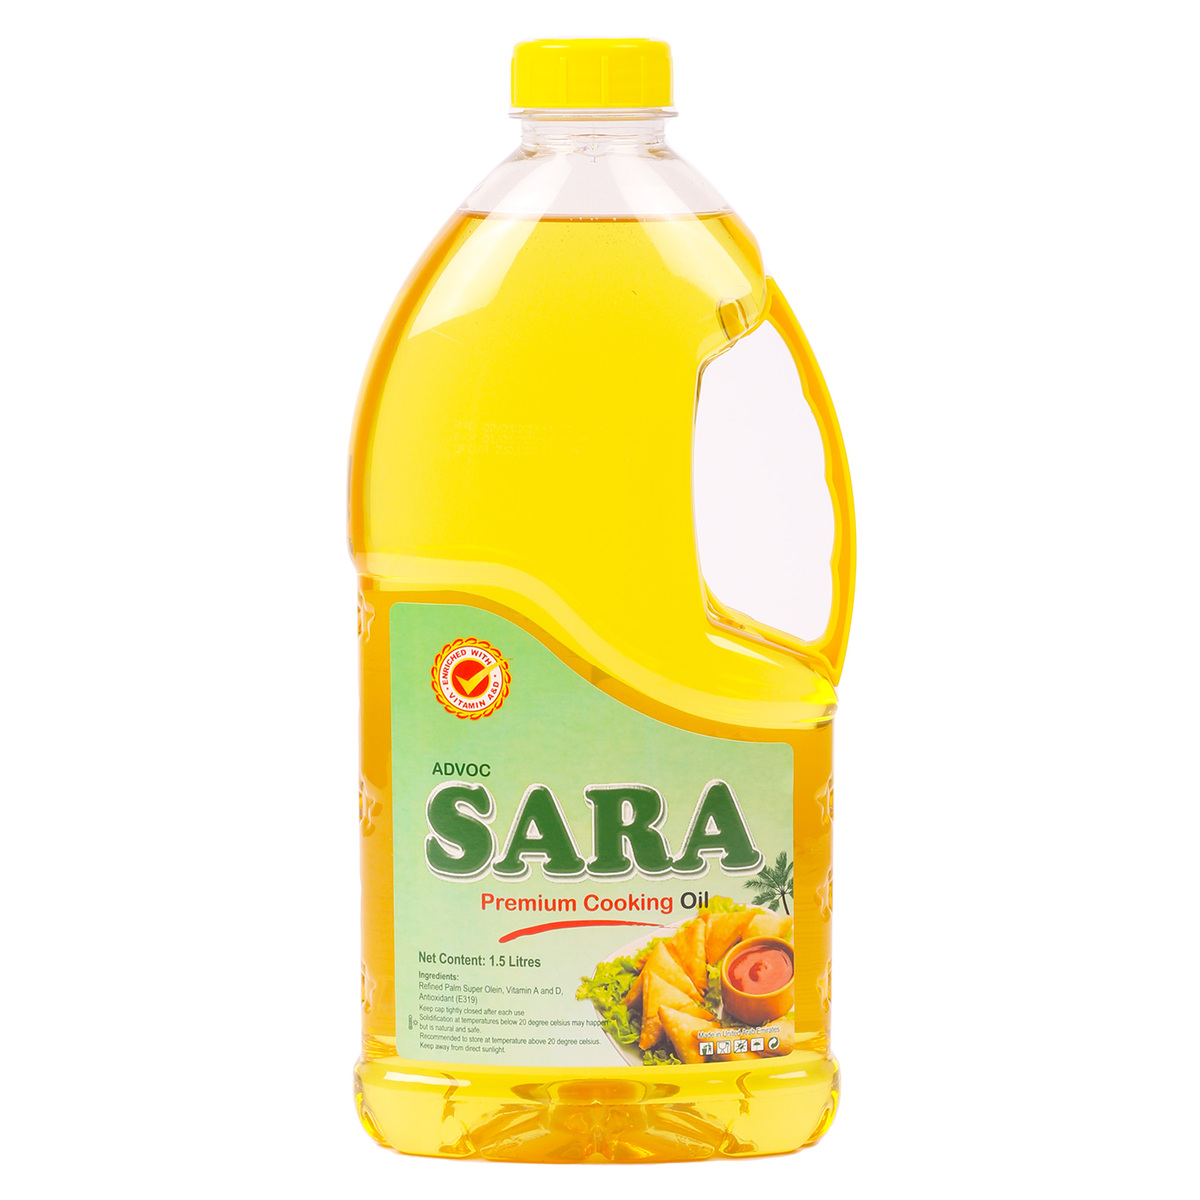 Sara Premium Cooking Oil 1.5 Litres